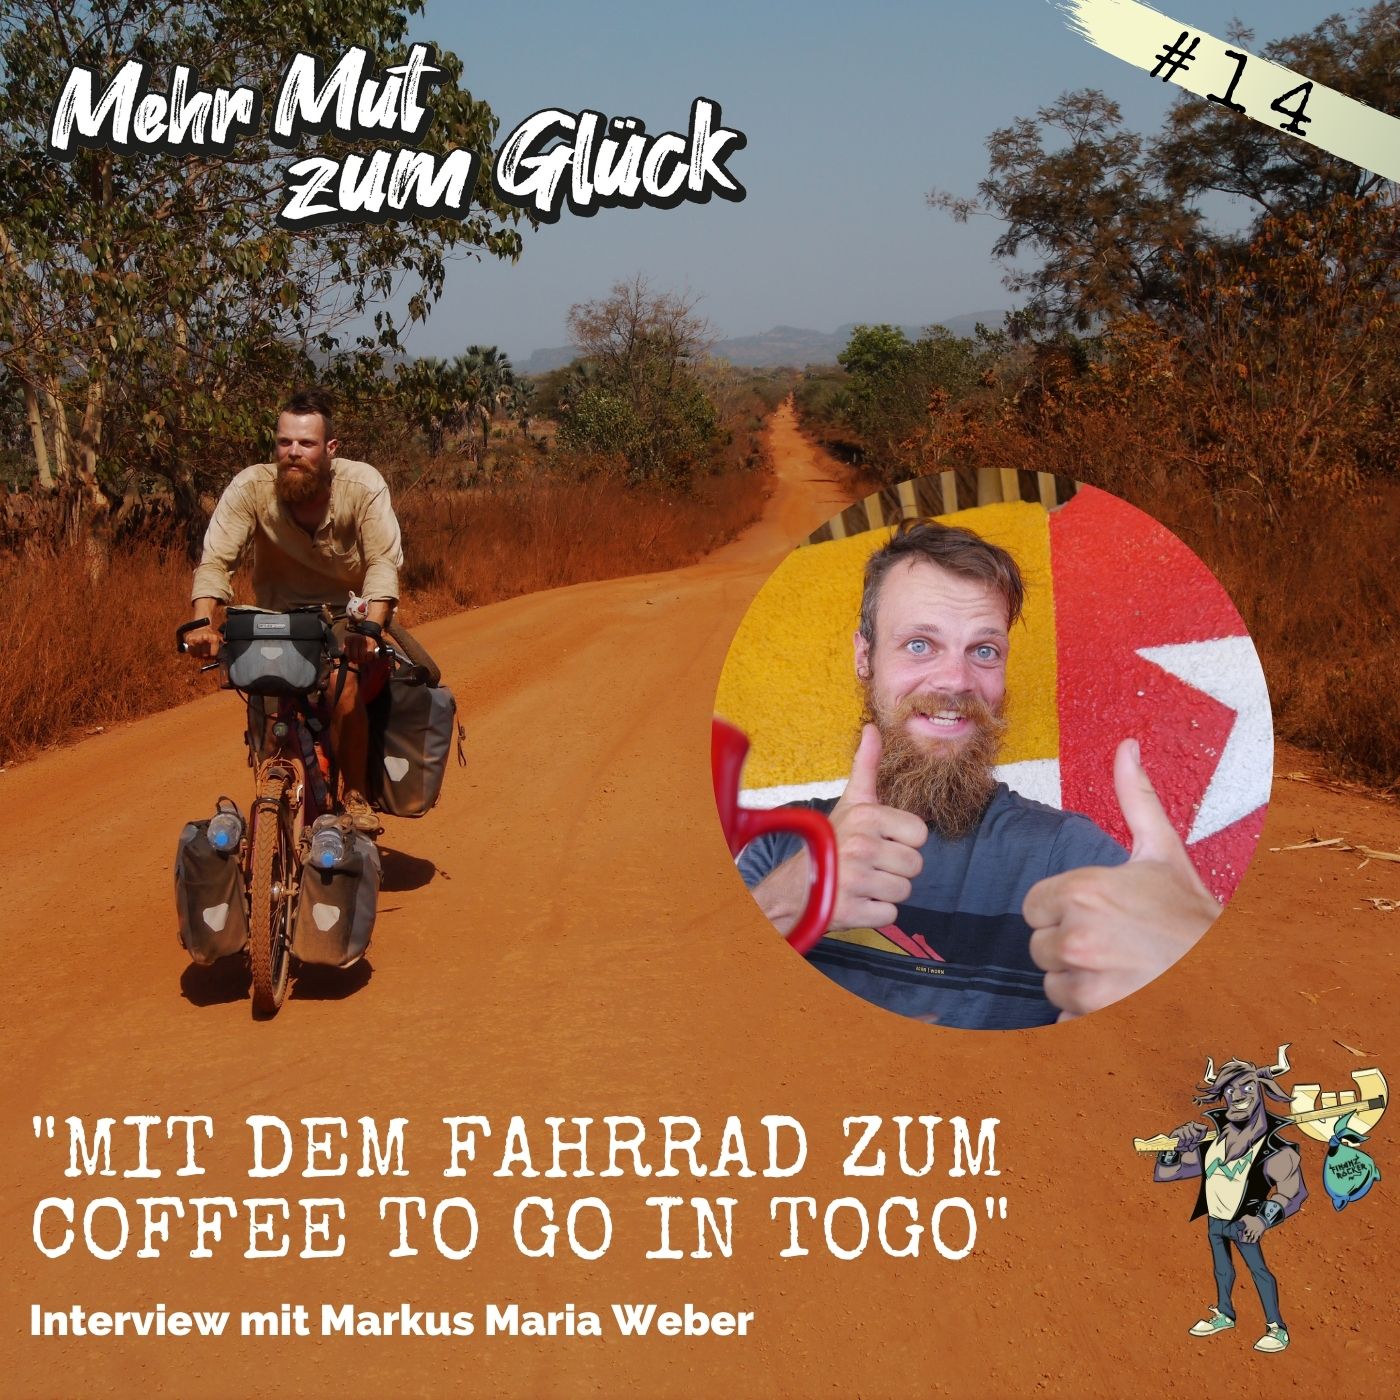 Folge 14: ”Mit dem Fahrrad zum Coffee to go in Togo” - Interview mit Markus Maria Weber